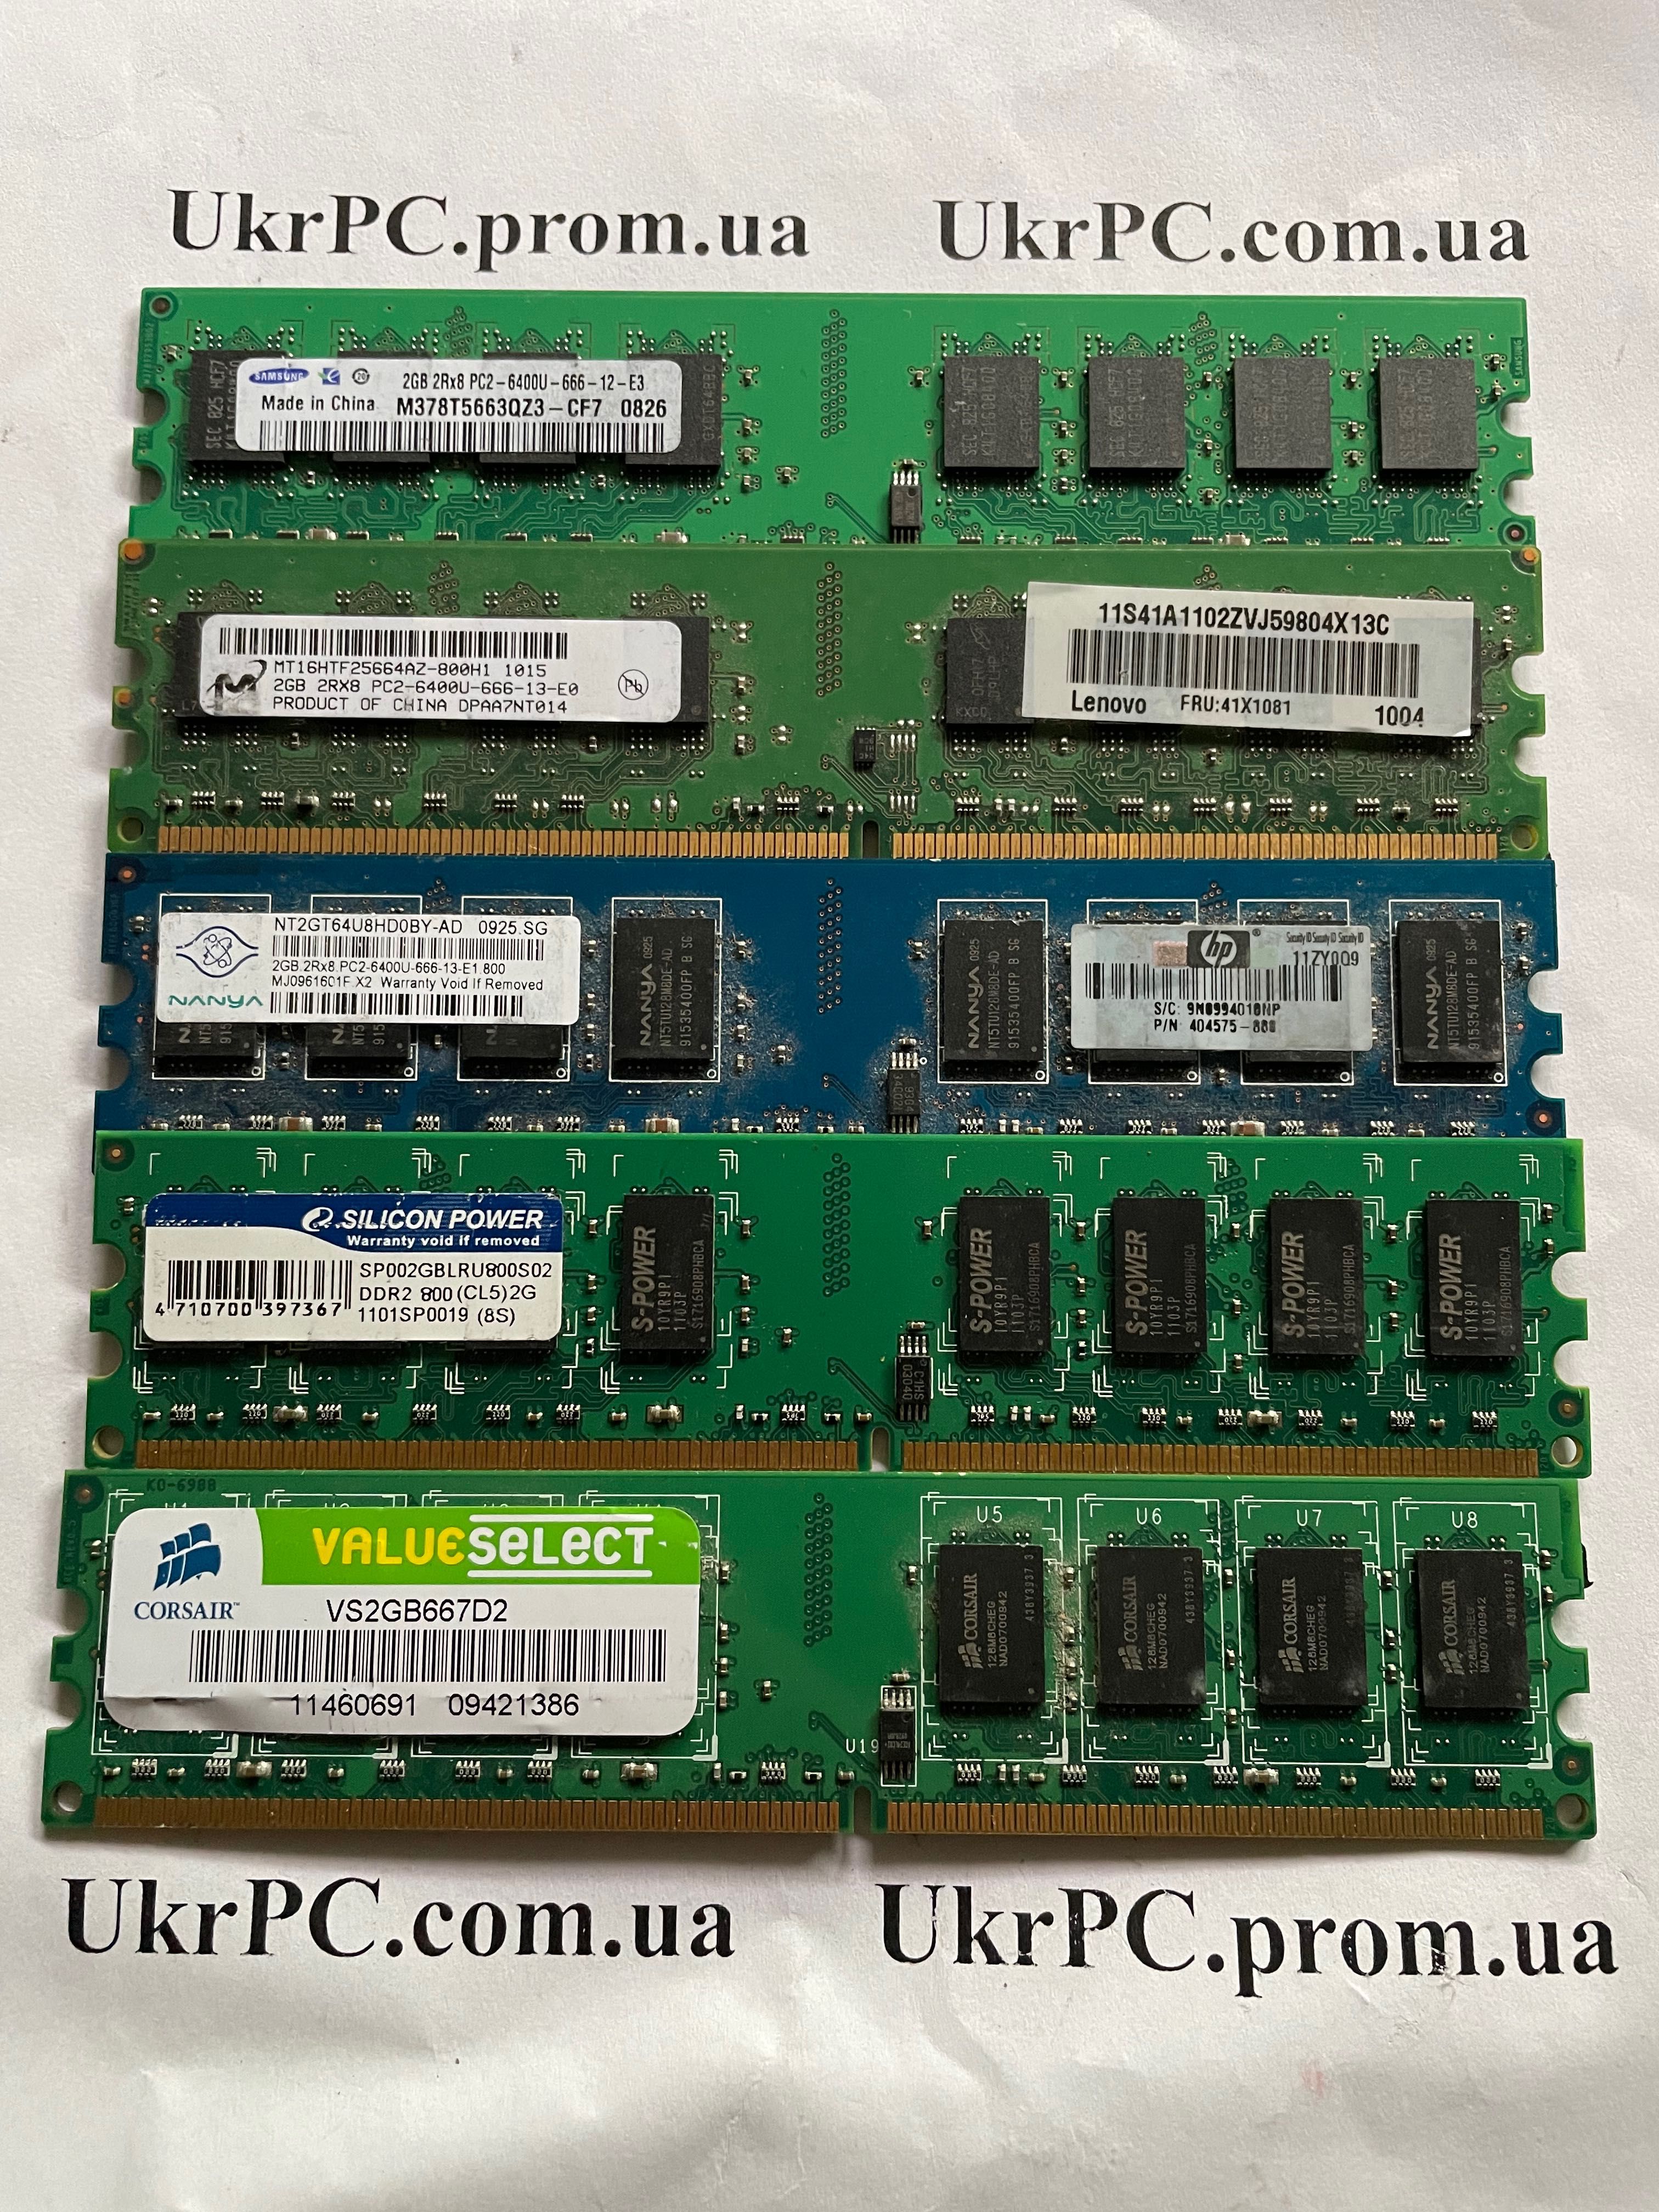 ОЗУ DDR2 2 GB , память для компьютера ДДР2 2 ГБ ( 800 МГц)